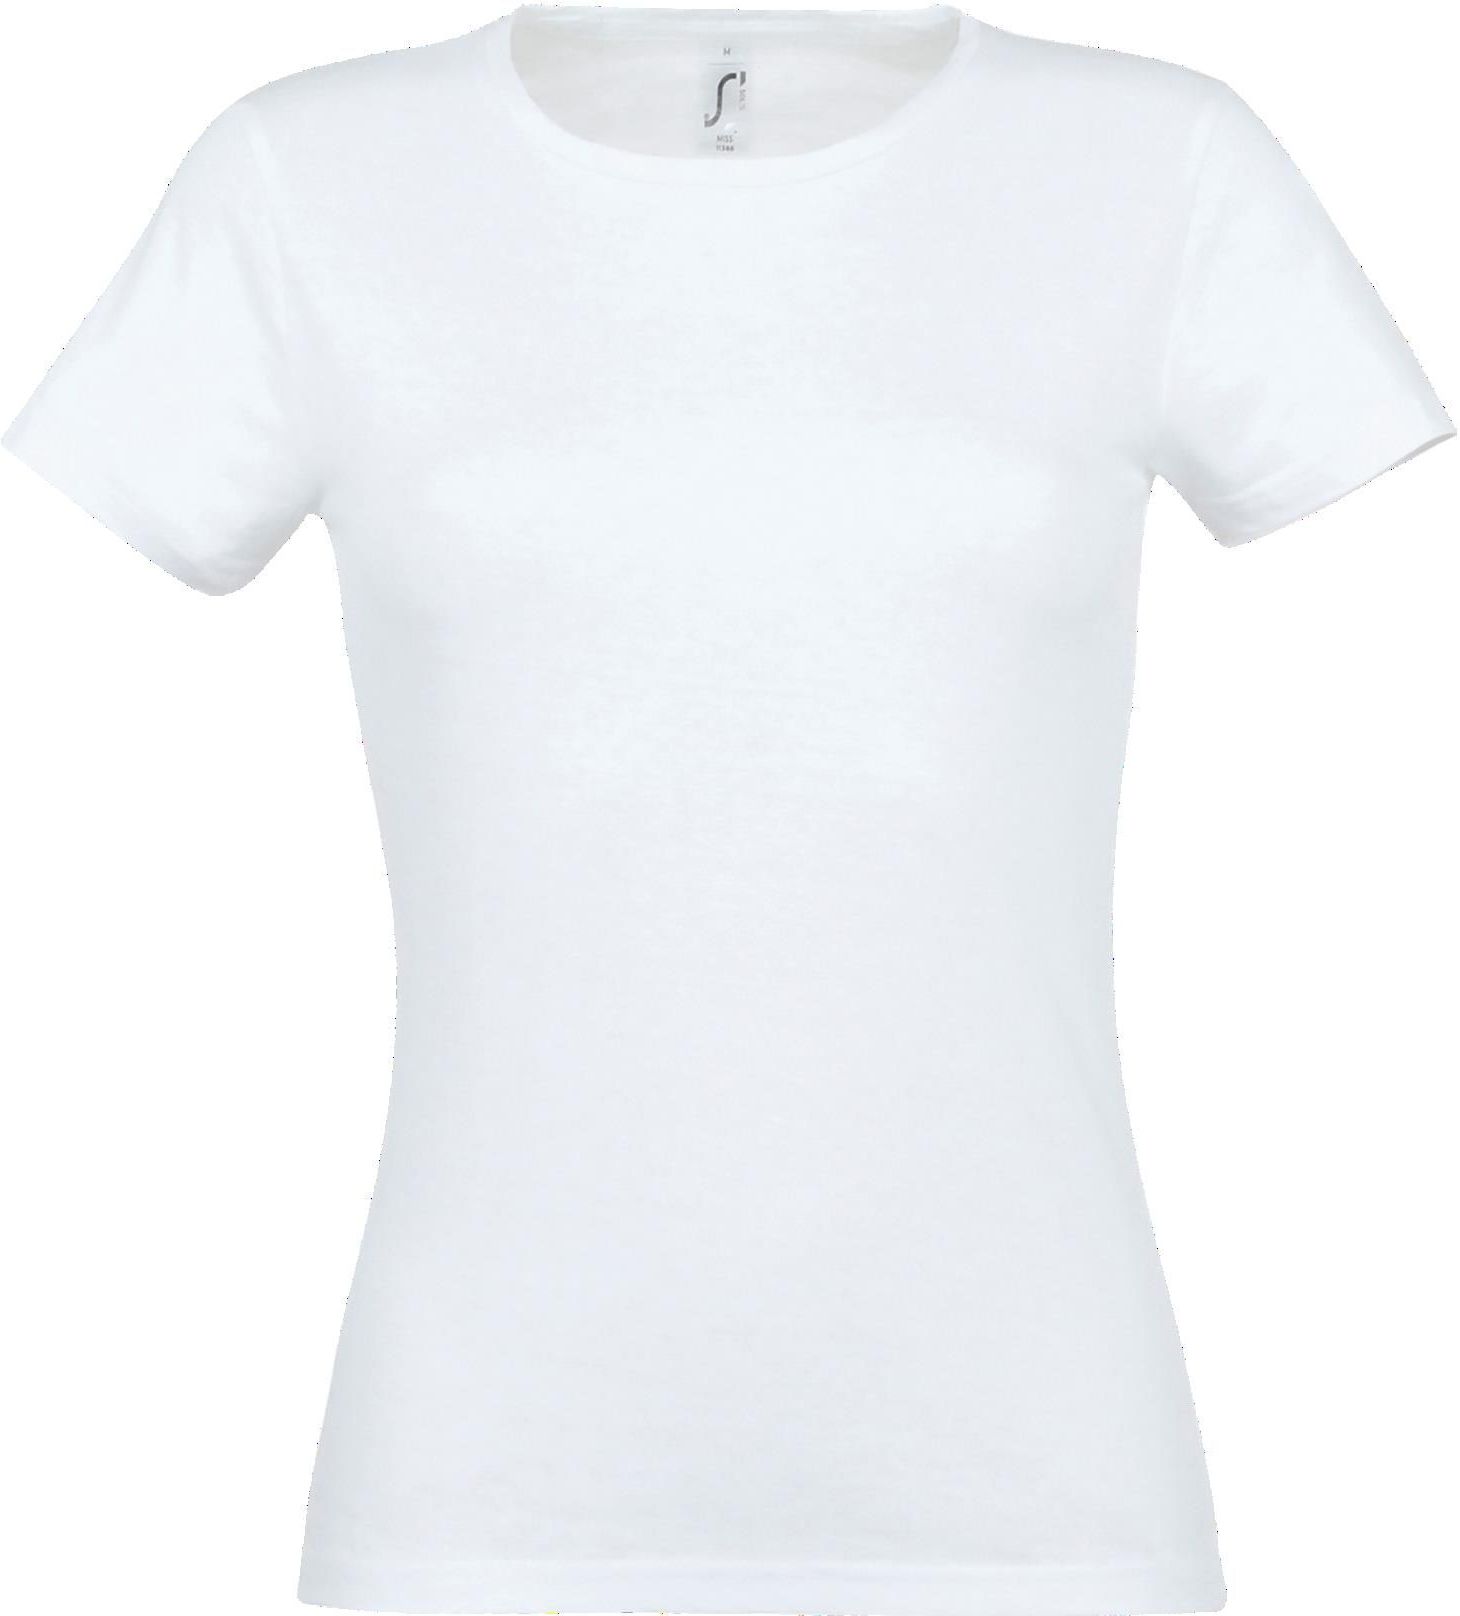 Γυναικείο T-shirt Miss SOLS 11386 White